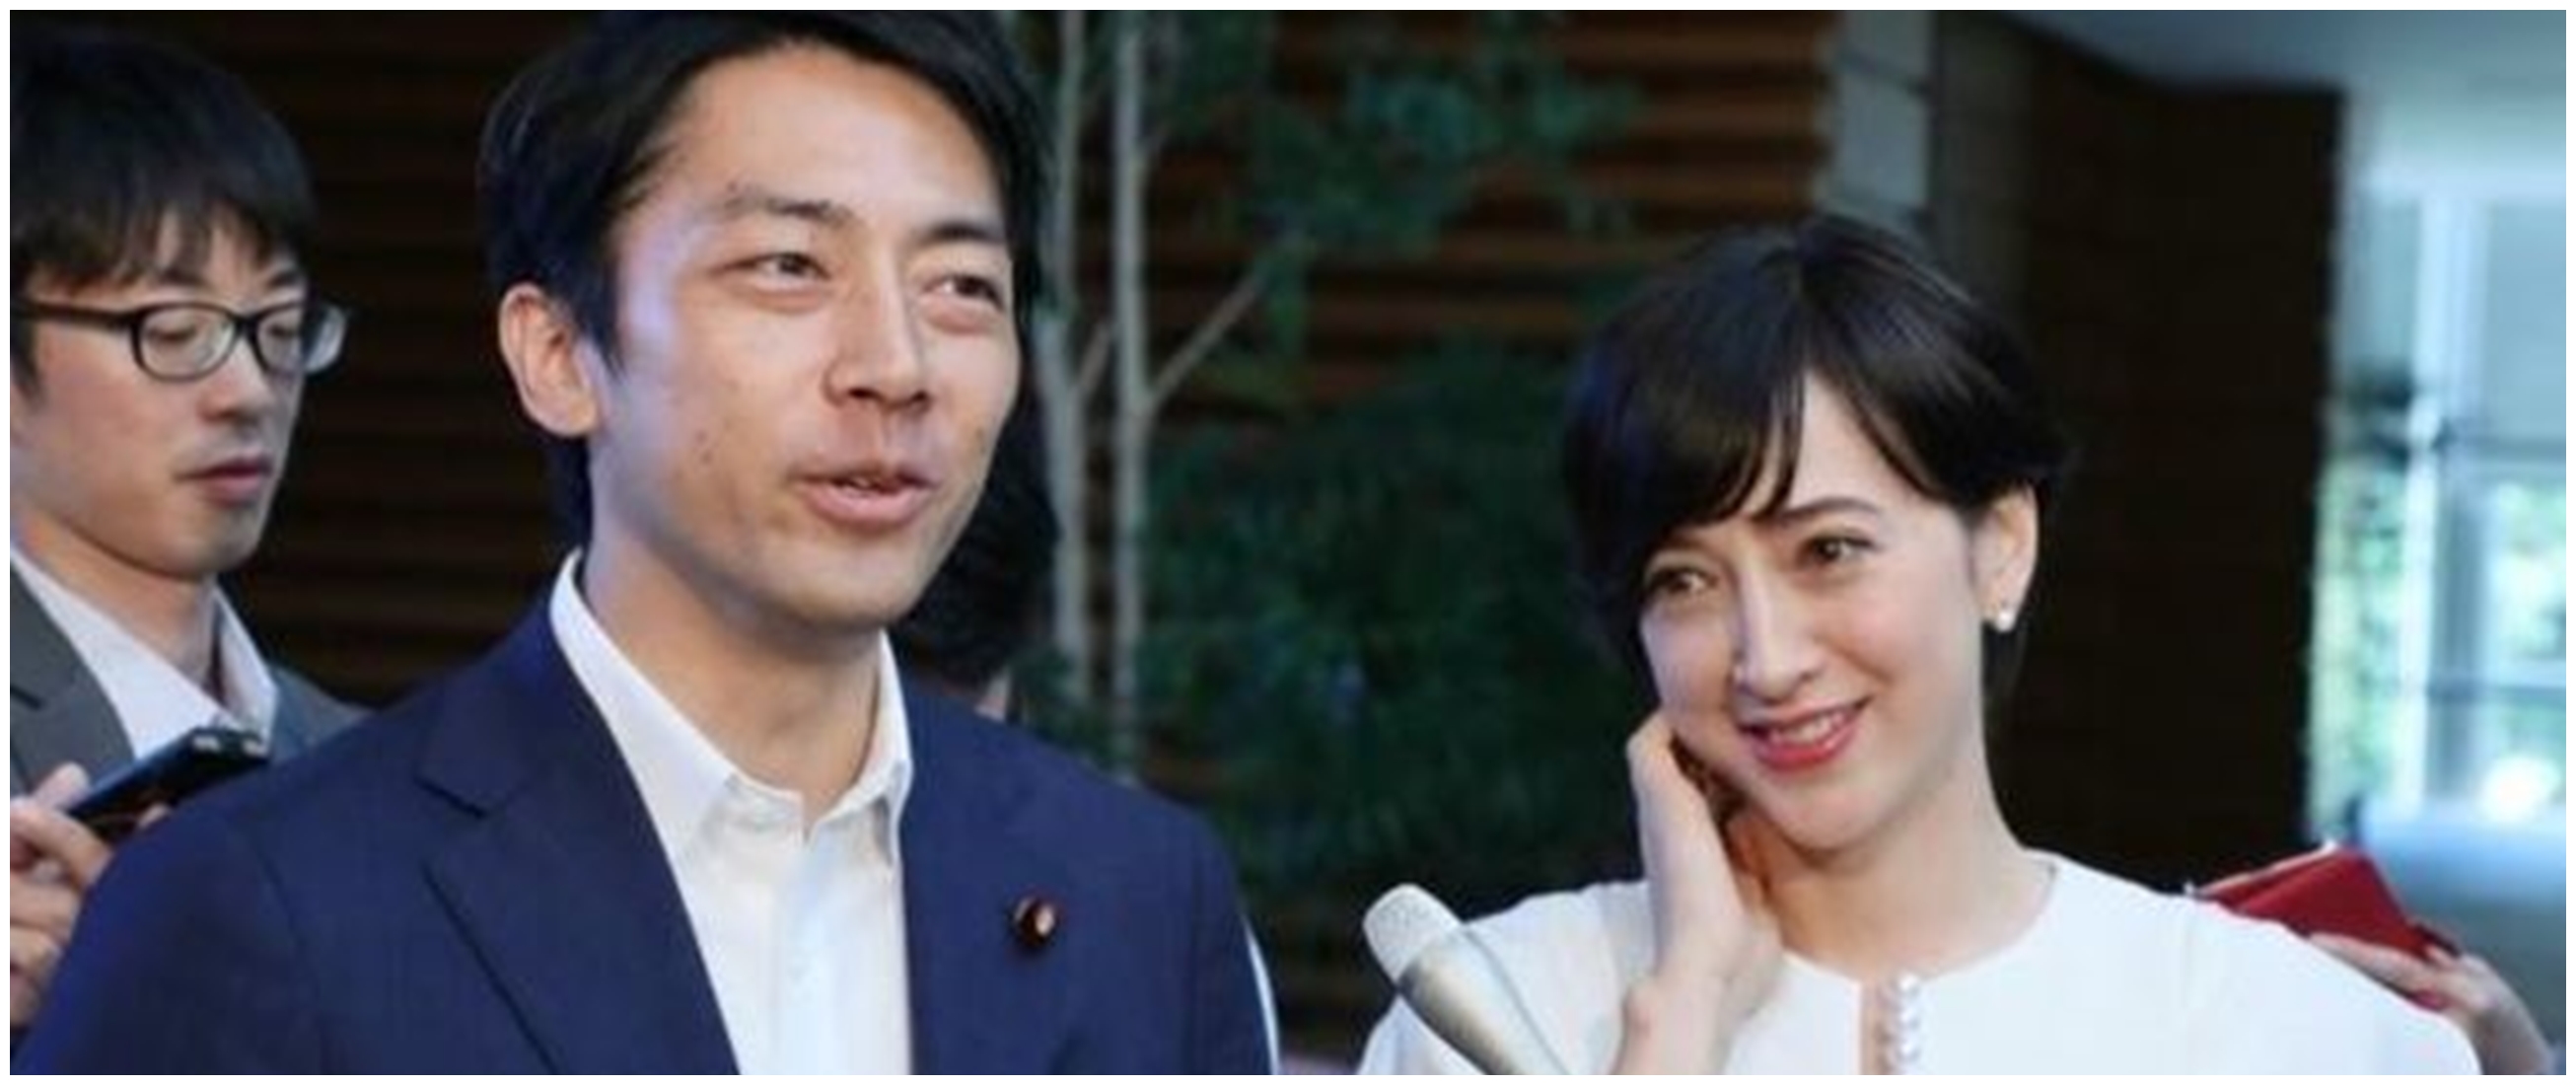 Istri melahirkan, Menteri di Jepang ajukan cuti ayah jadi sorotan